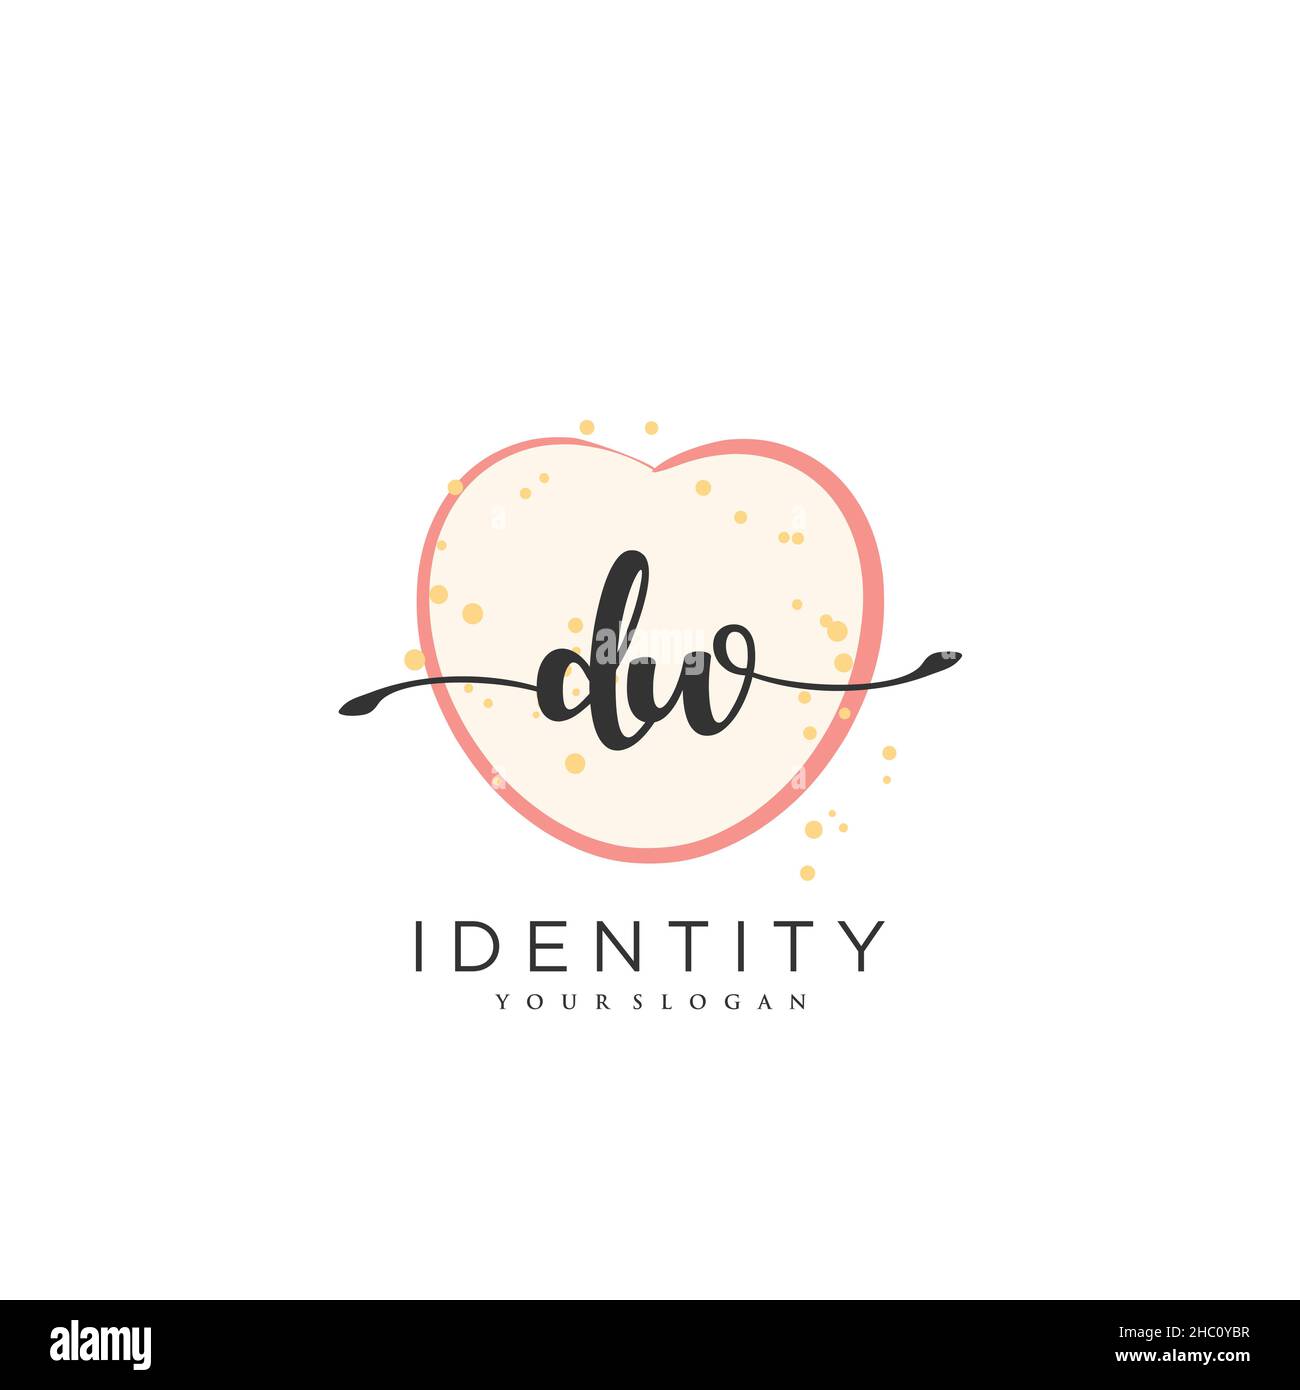 DW Handwriting logo vector arte de la firma inicial, boda, moda, joyería, boutique, floral y botánico con plantilla creativa para cualquier empresa Ilustración del Vector